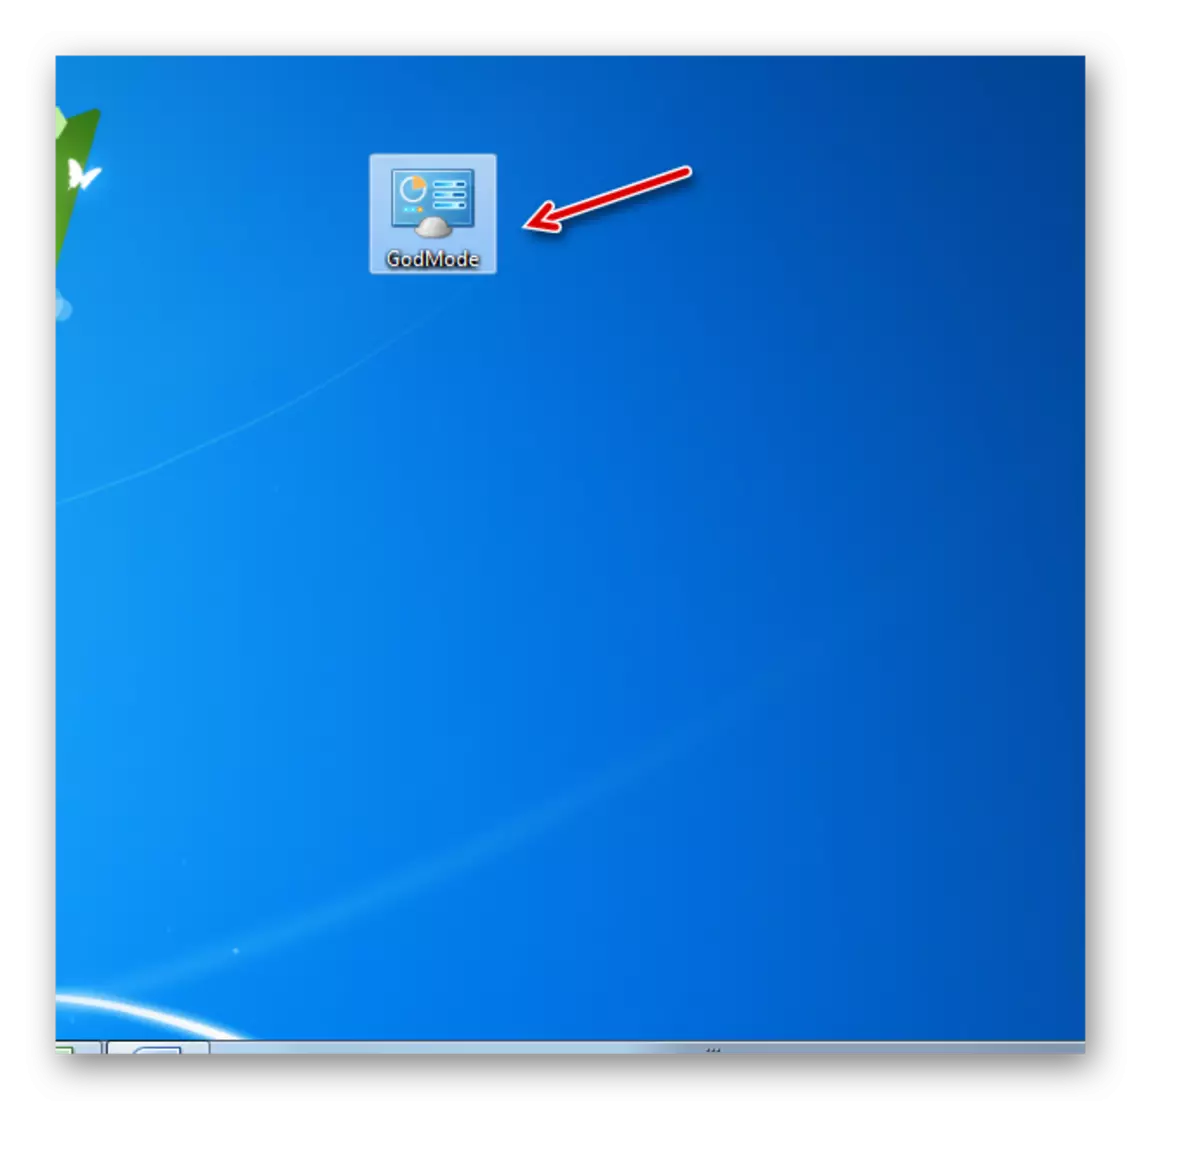 Etiketa Godmode për të shkuar në mënyrën e Perëndisë të krijuar në desktop në Windows 7